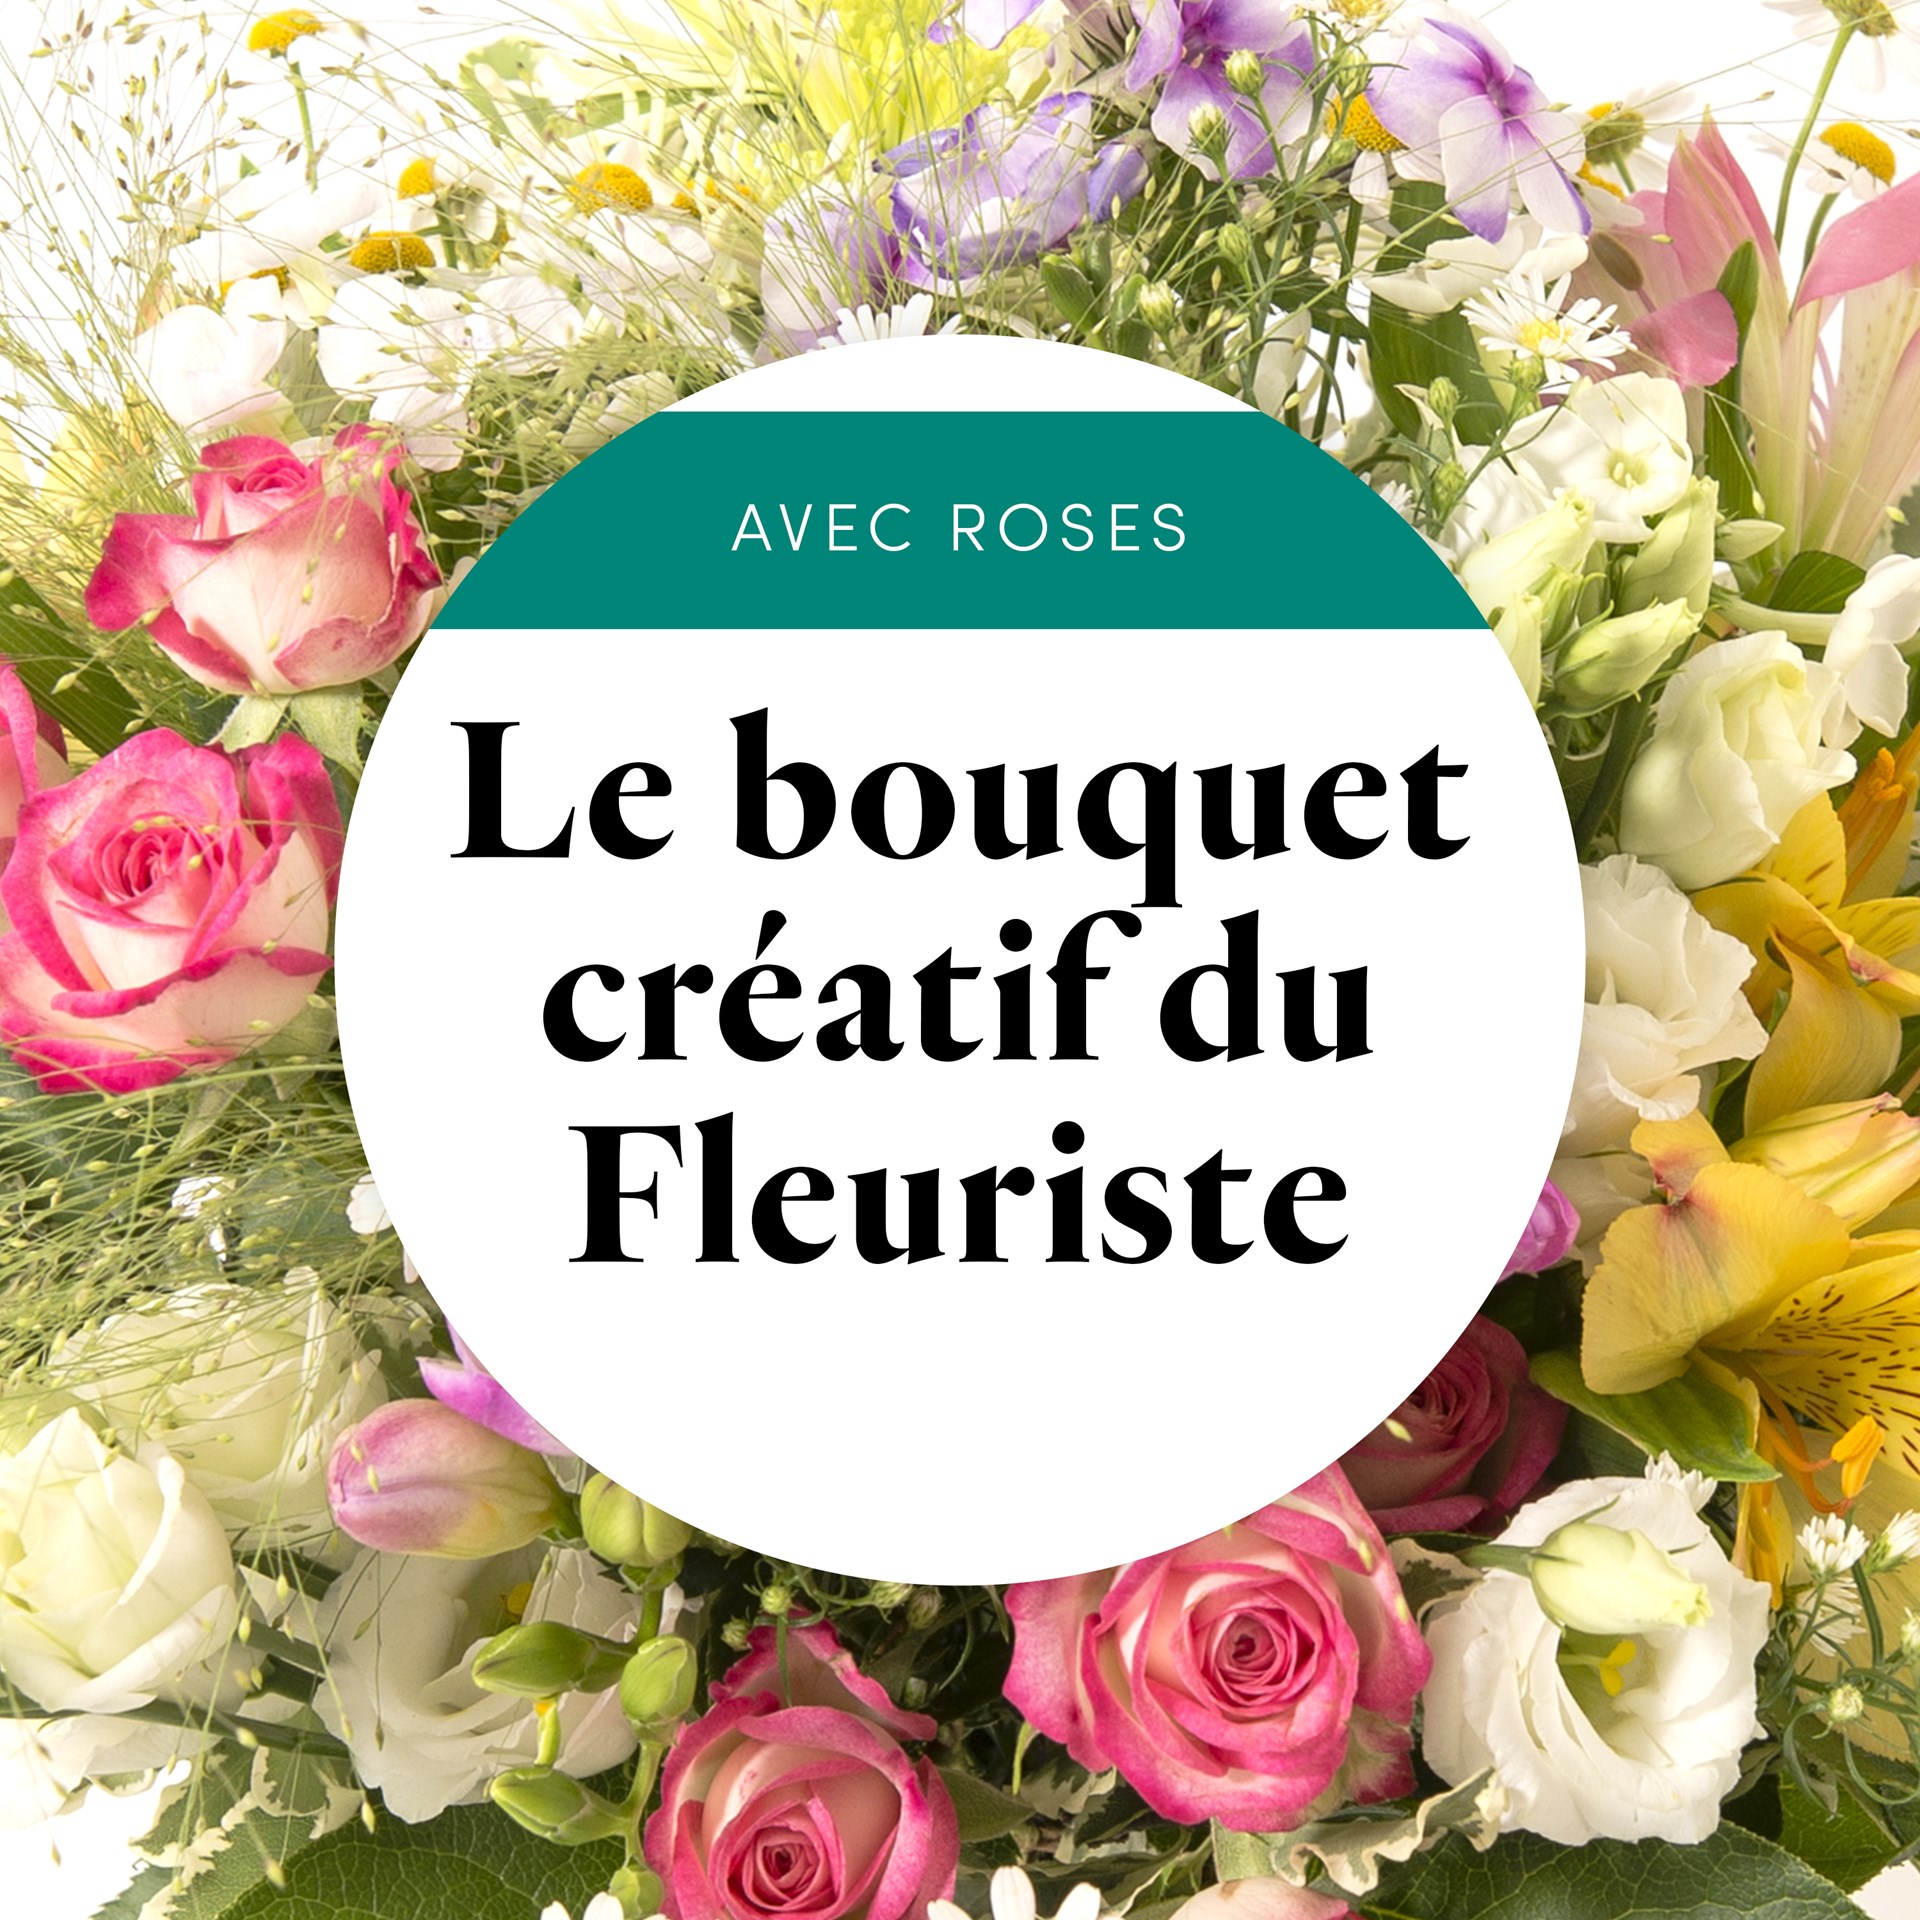 product image for Bouquet du fleuriste multicolore avec des roses